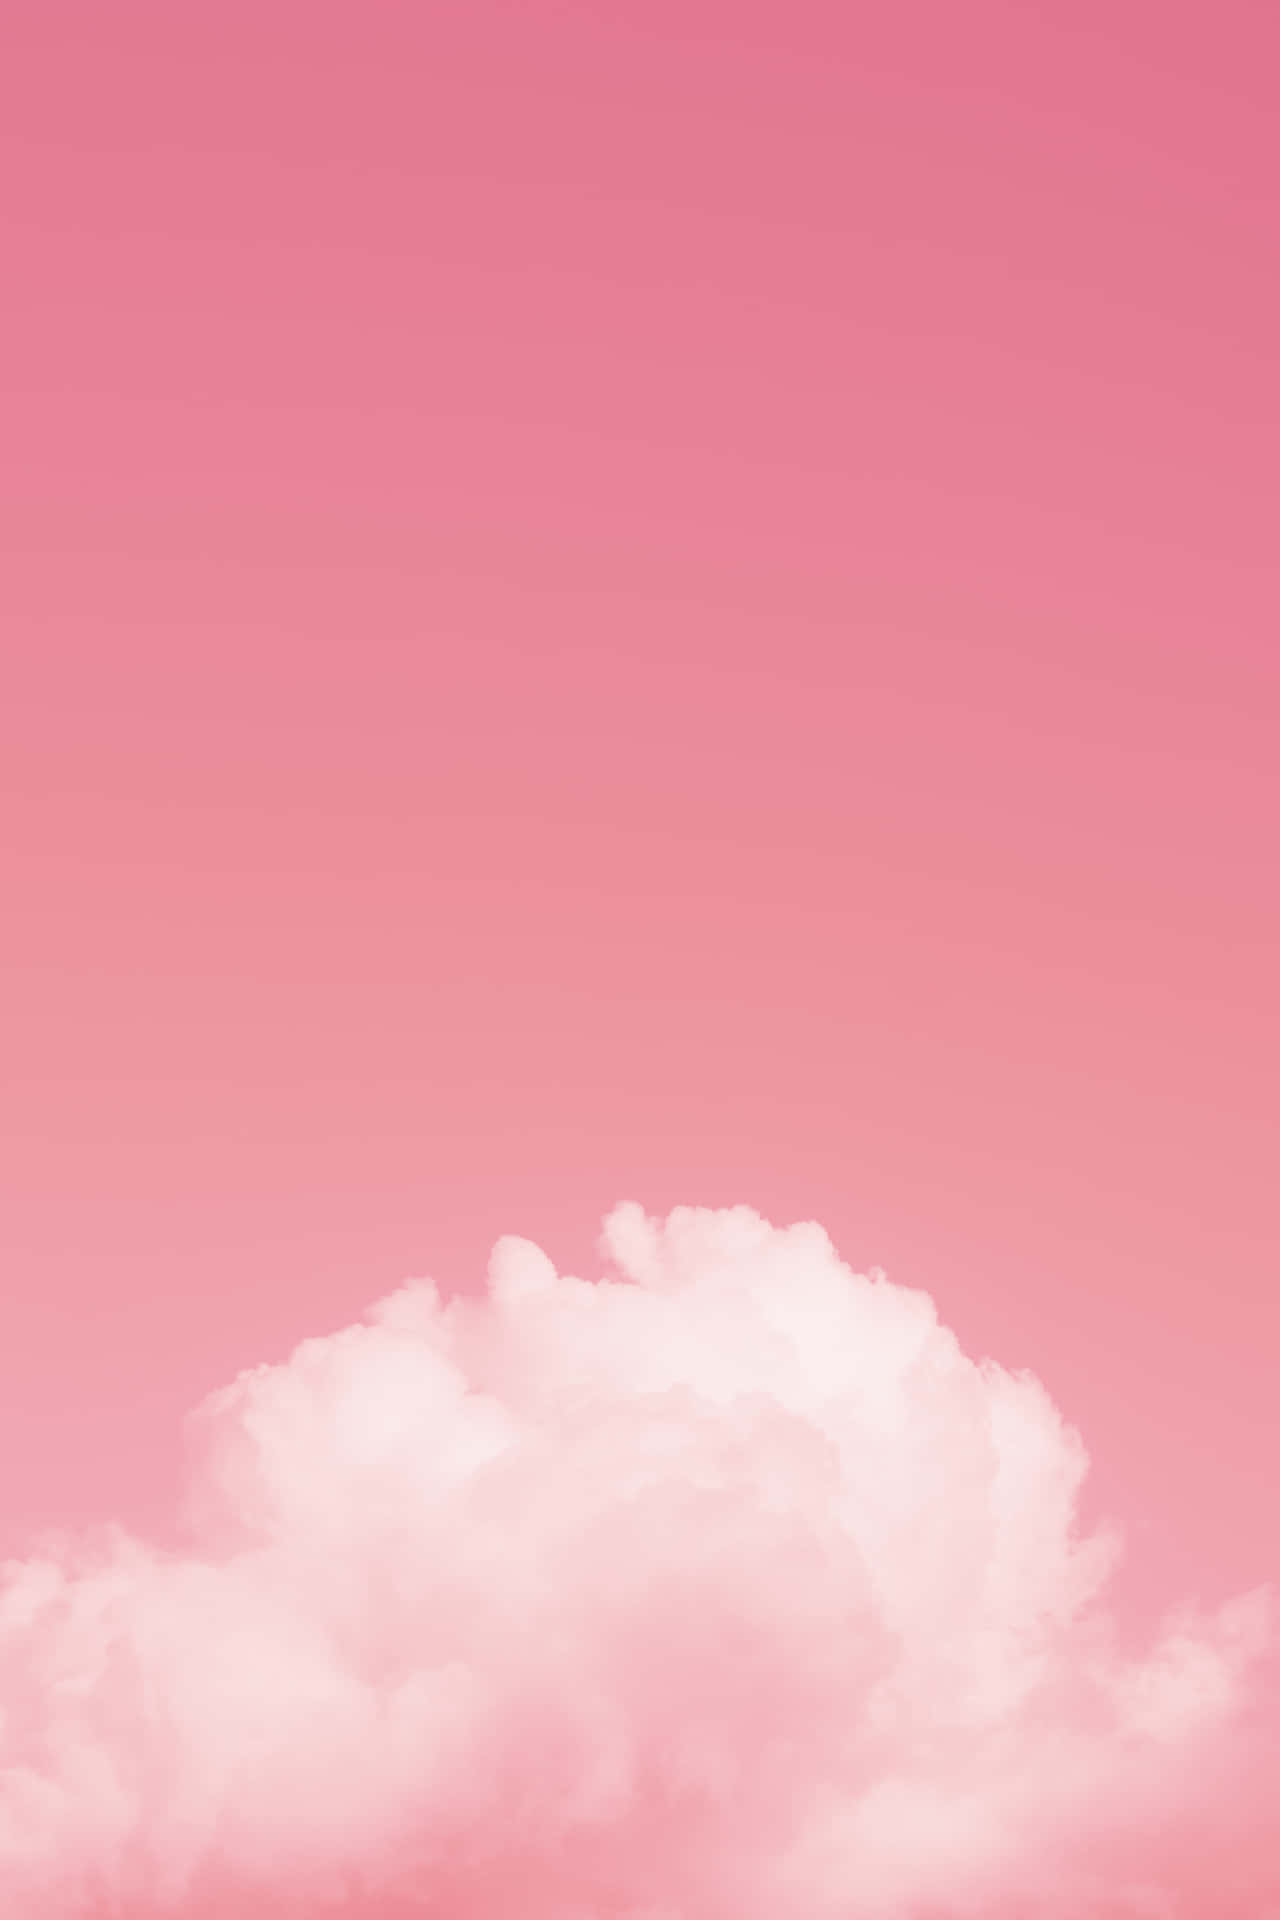 Rosawolkenhintergrund - Hintergrundbilder Für Android Wallpaper